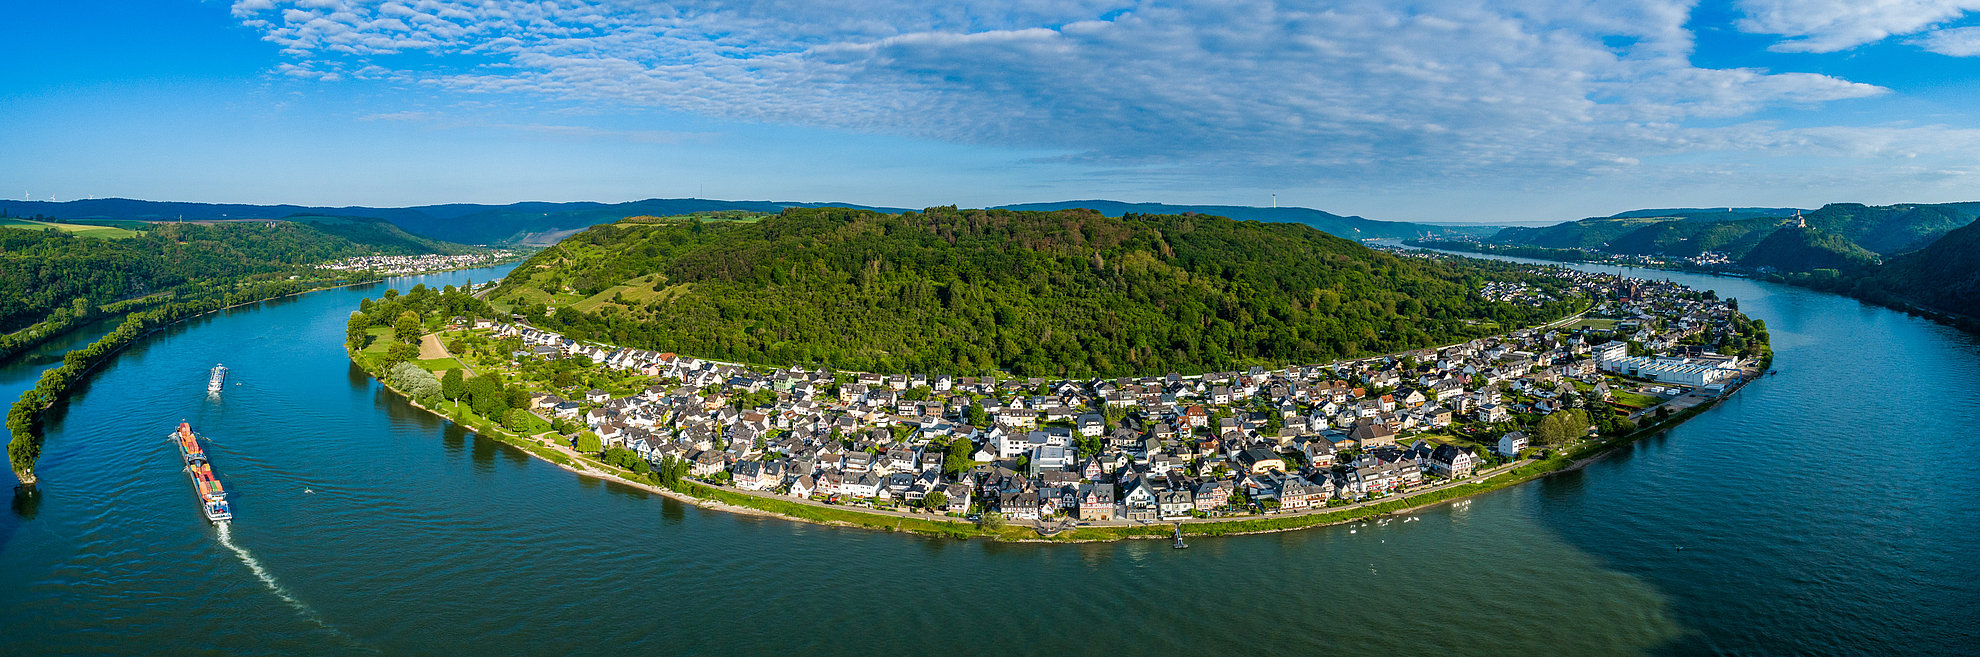 Ausschnitt des Ausblicks auf das Rheintal und die Marksburg rechts im Bild.